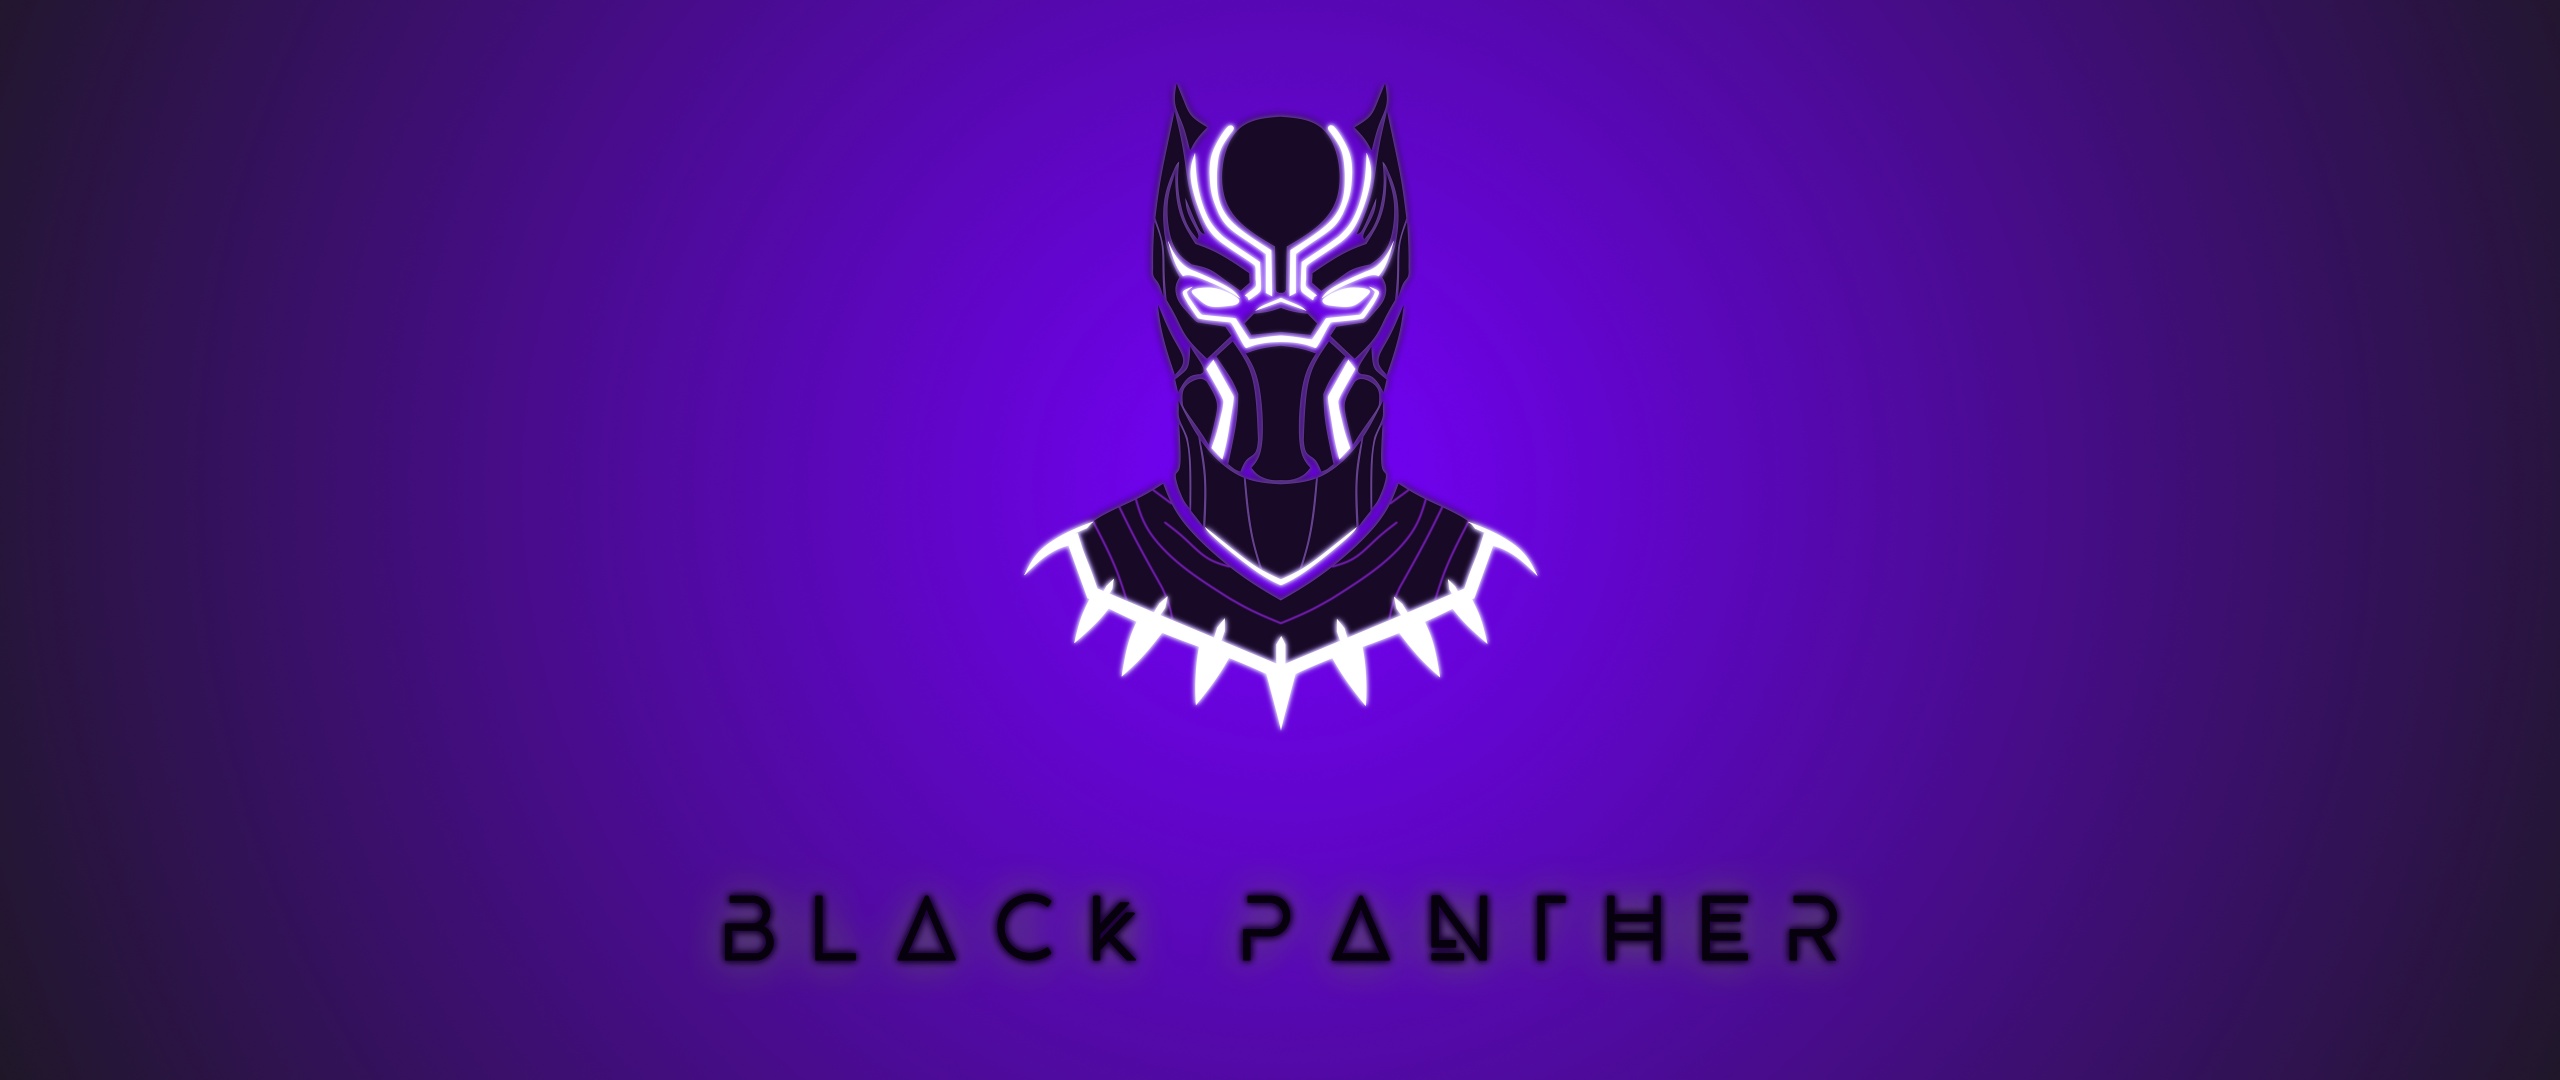 Marvel Black Panther Wallpaper